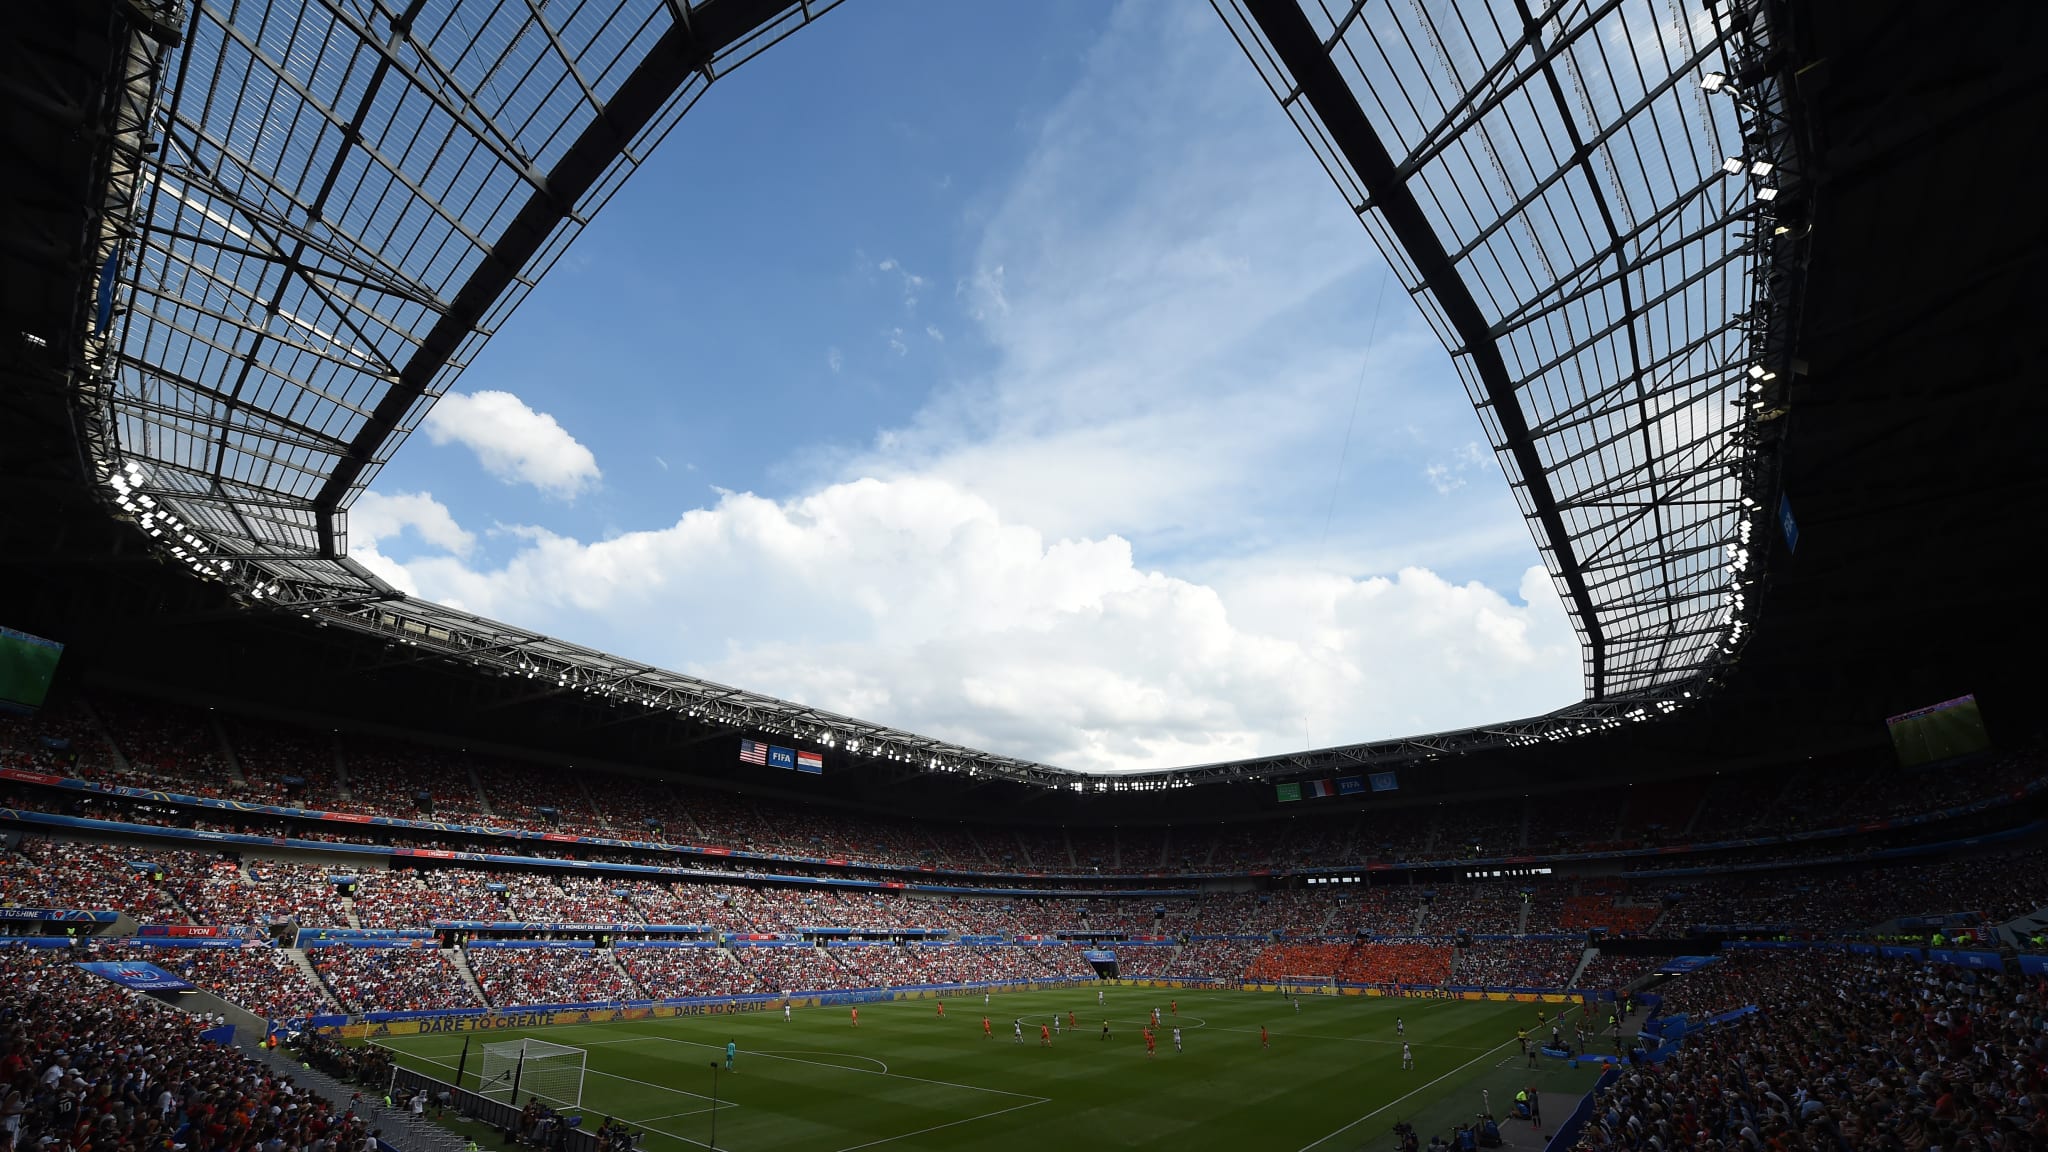 Quiénes somos - Noticias - La FIFA organiza una demostración en remoto de la tecnología avanzada para el fuera de juego